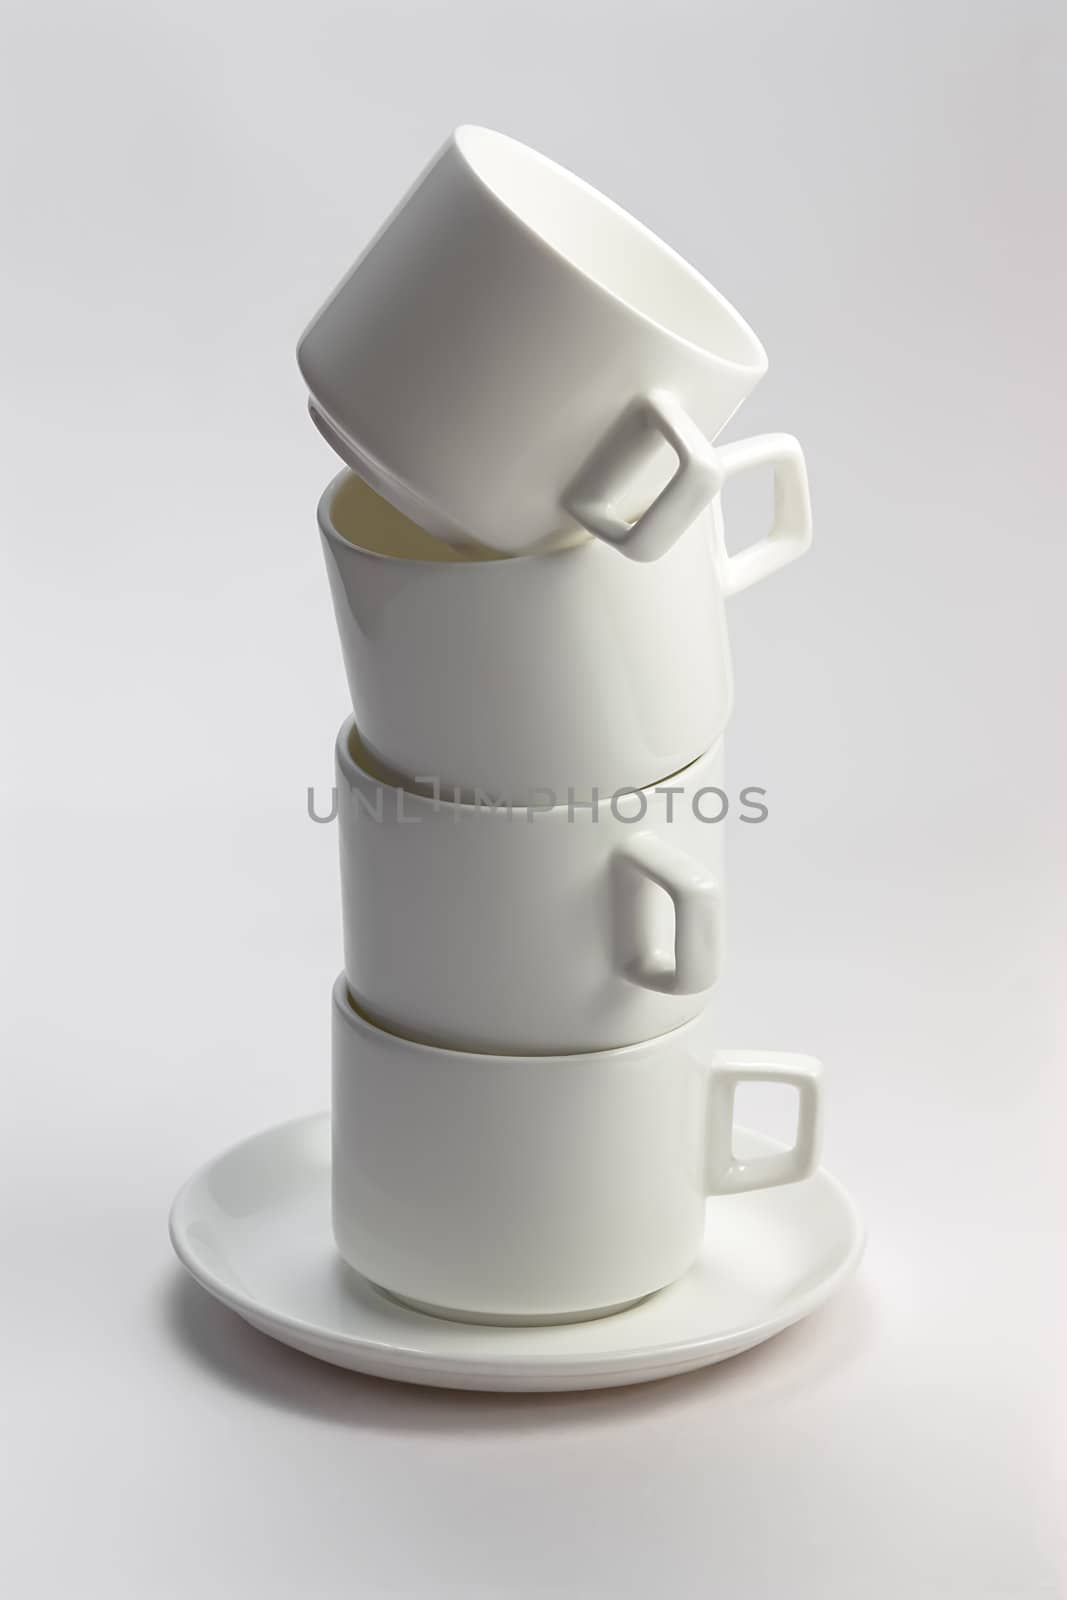 Isolated white ceramic mug  with white background